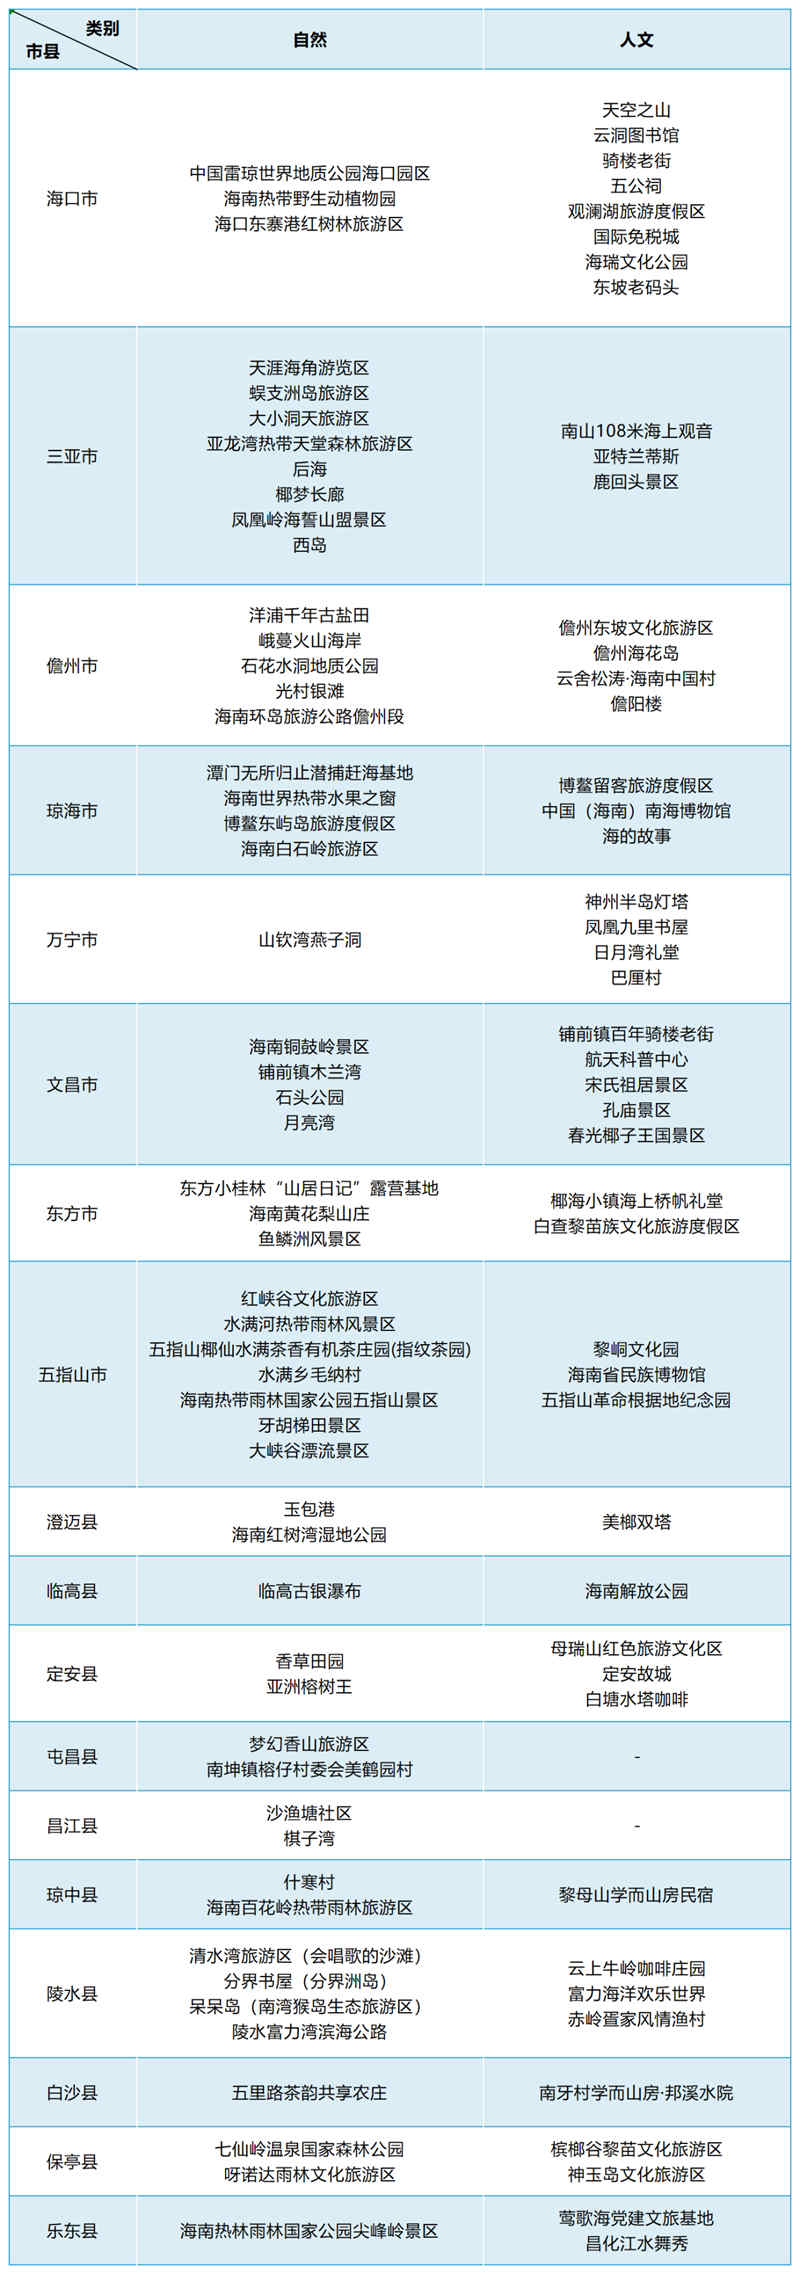 网红景点名单。海南省旅游协会供图